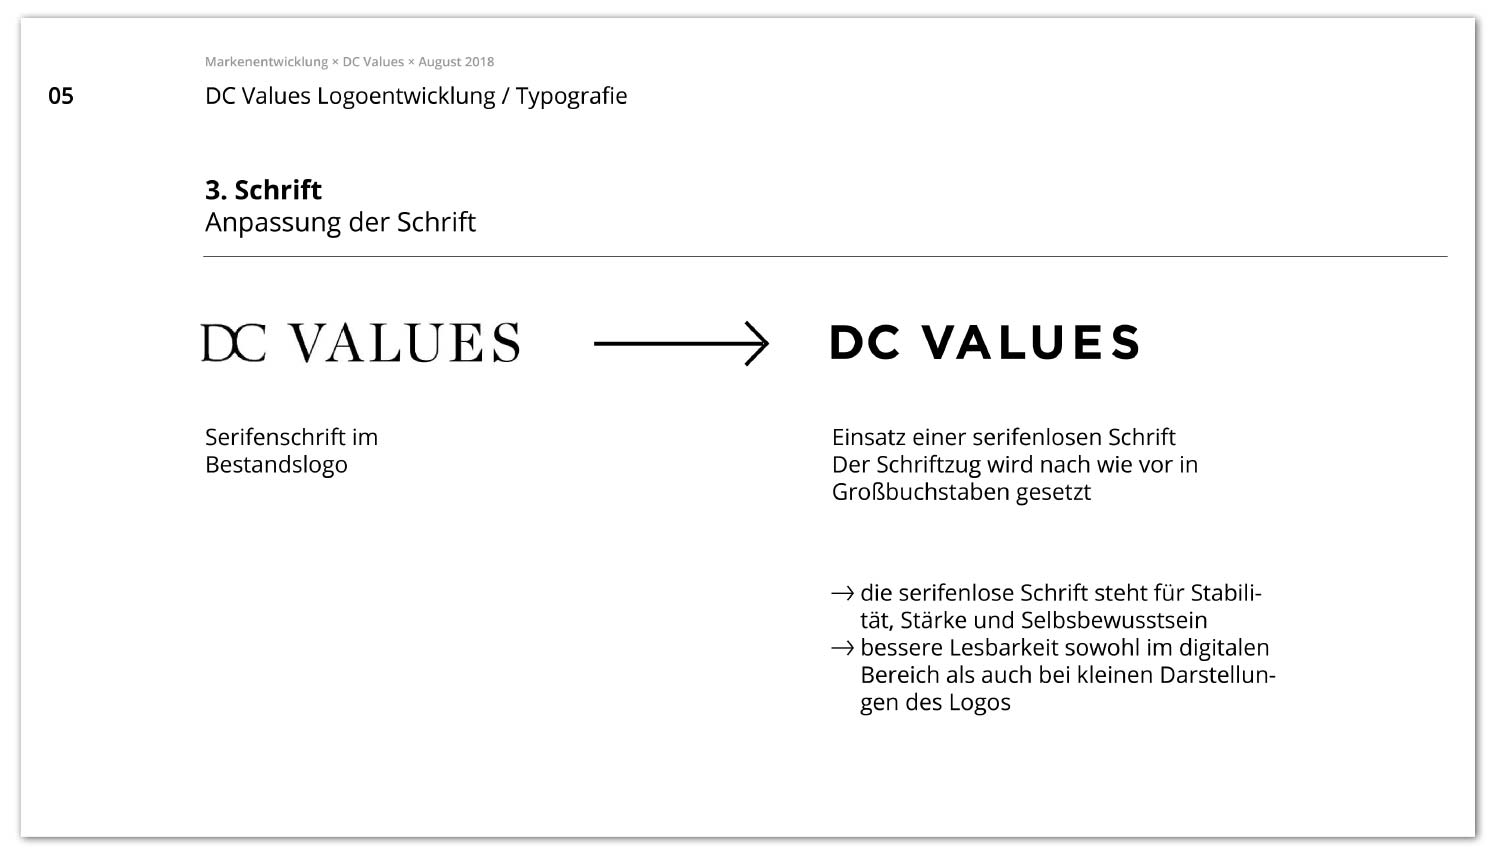 Markenentwicklung Values Real Estate in Hamburg von Susann Ihlenfeld